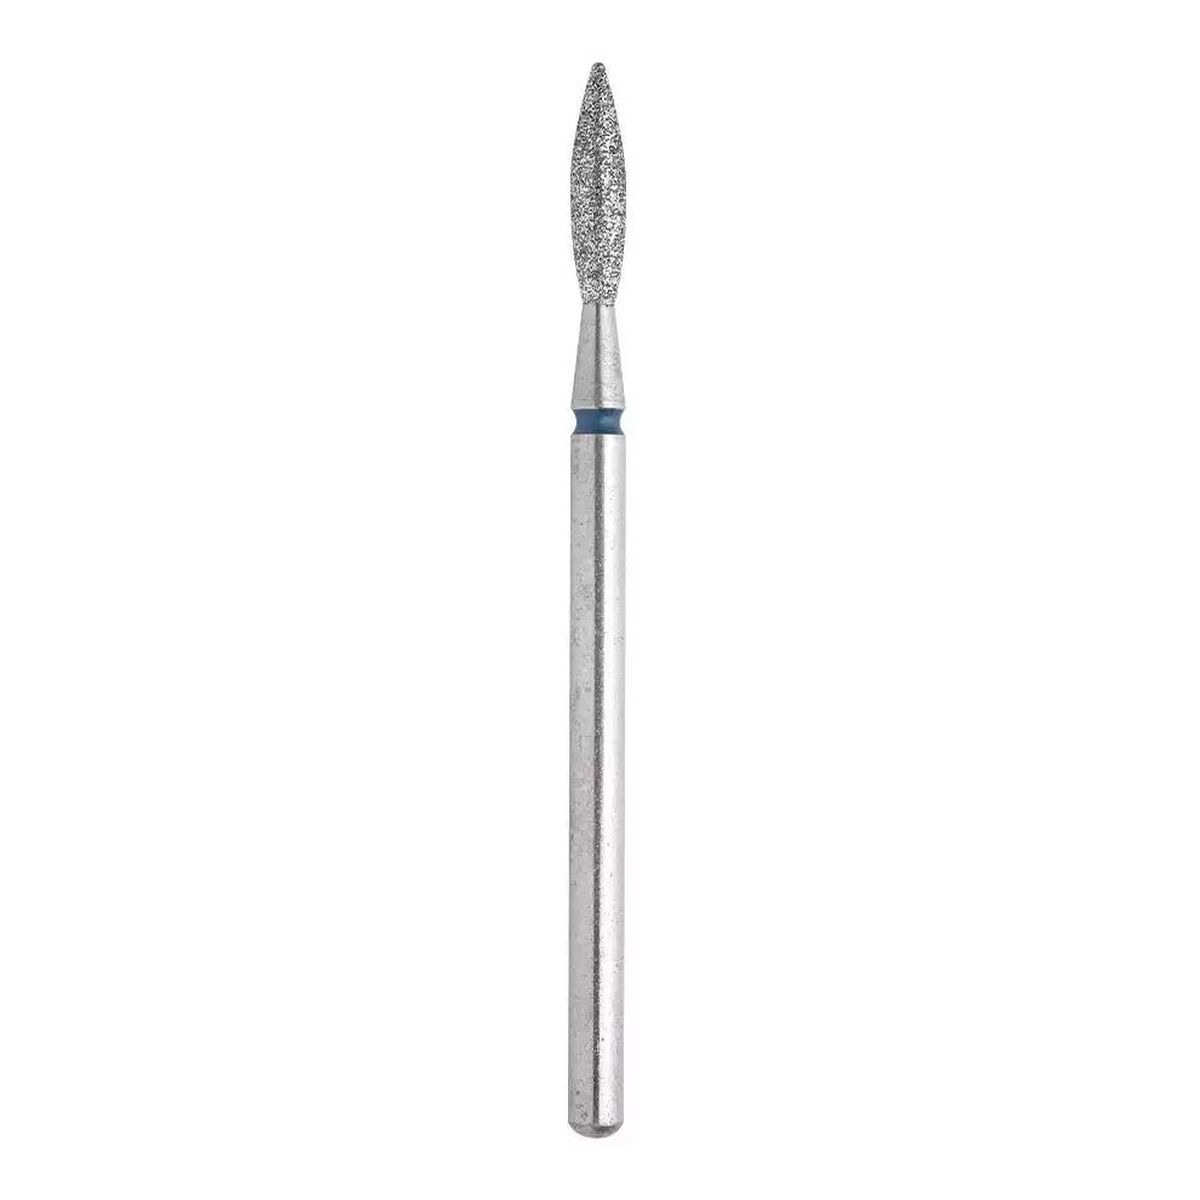 Staleks Staleks frez do paznokci-diamentowy płomyk 2.3/10mm (niebieski) 1szt